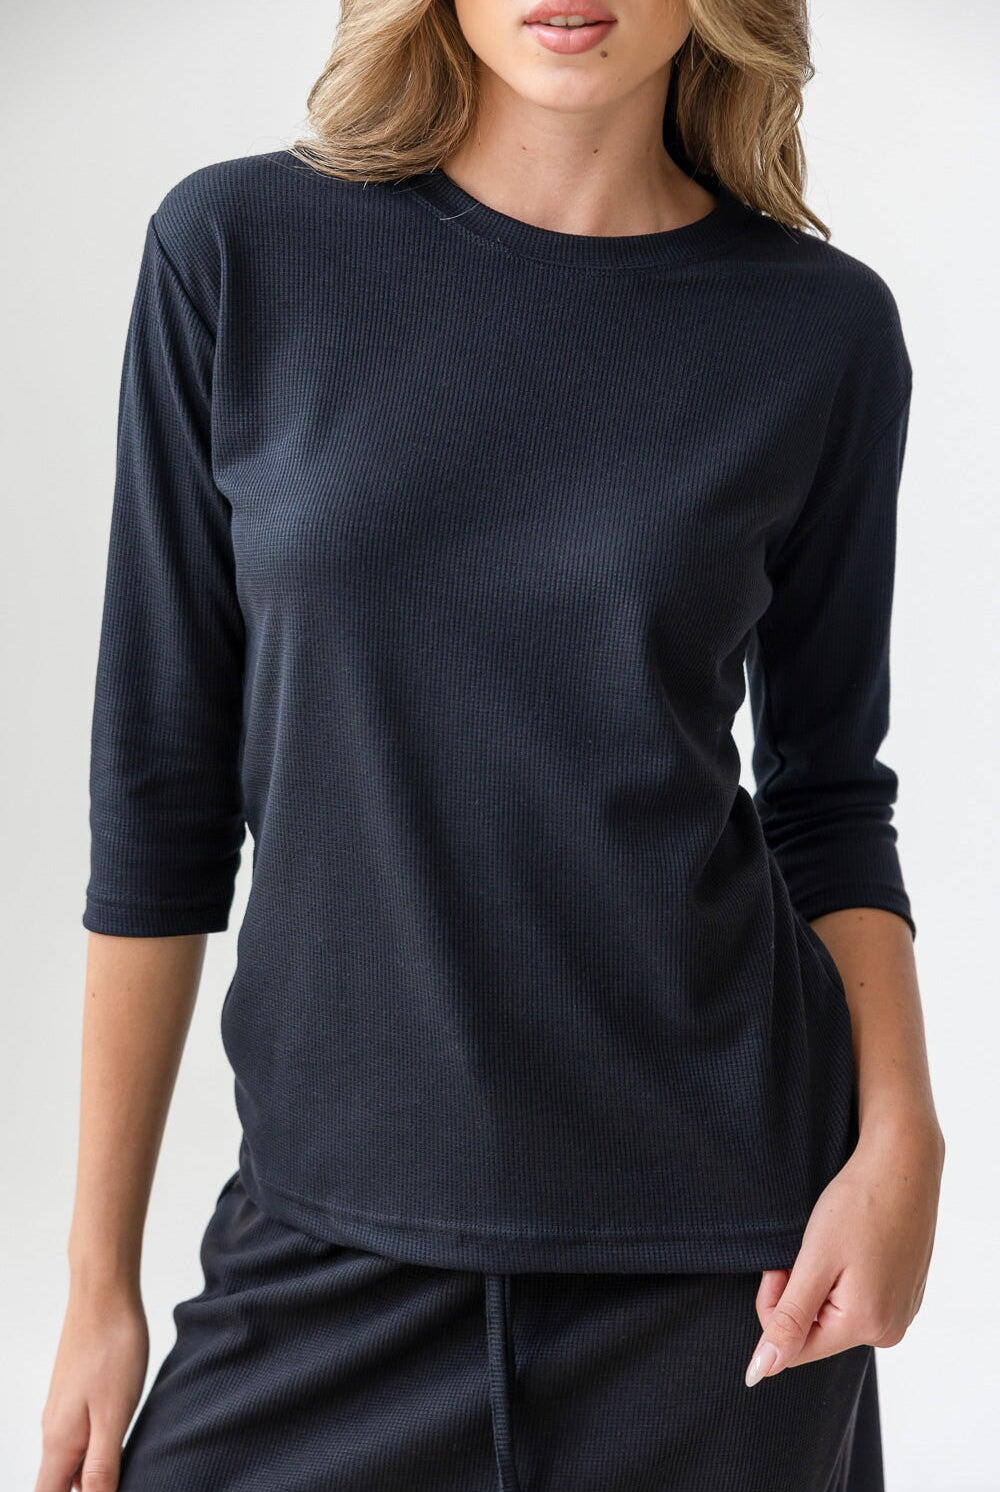 חולצת מלאני TwentySix Black One Size 